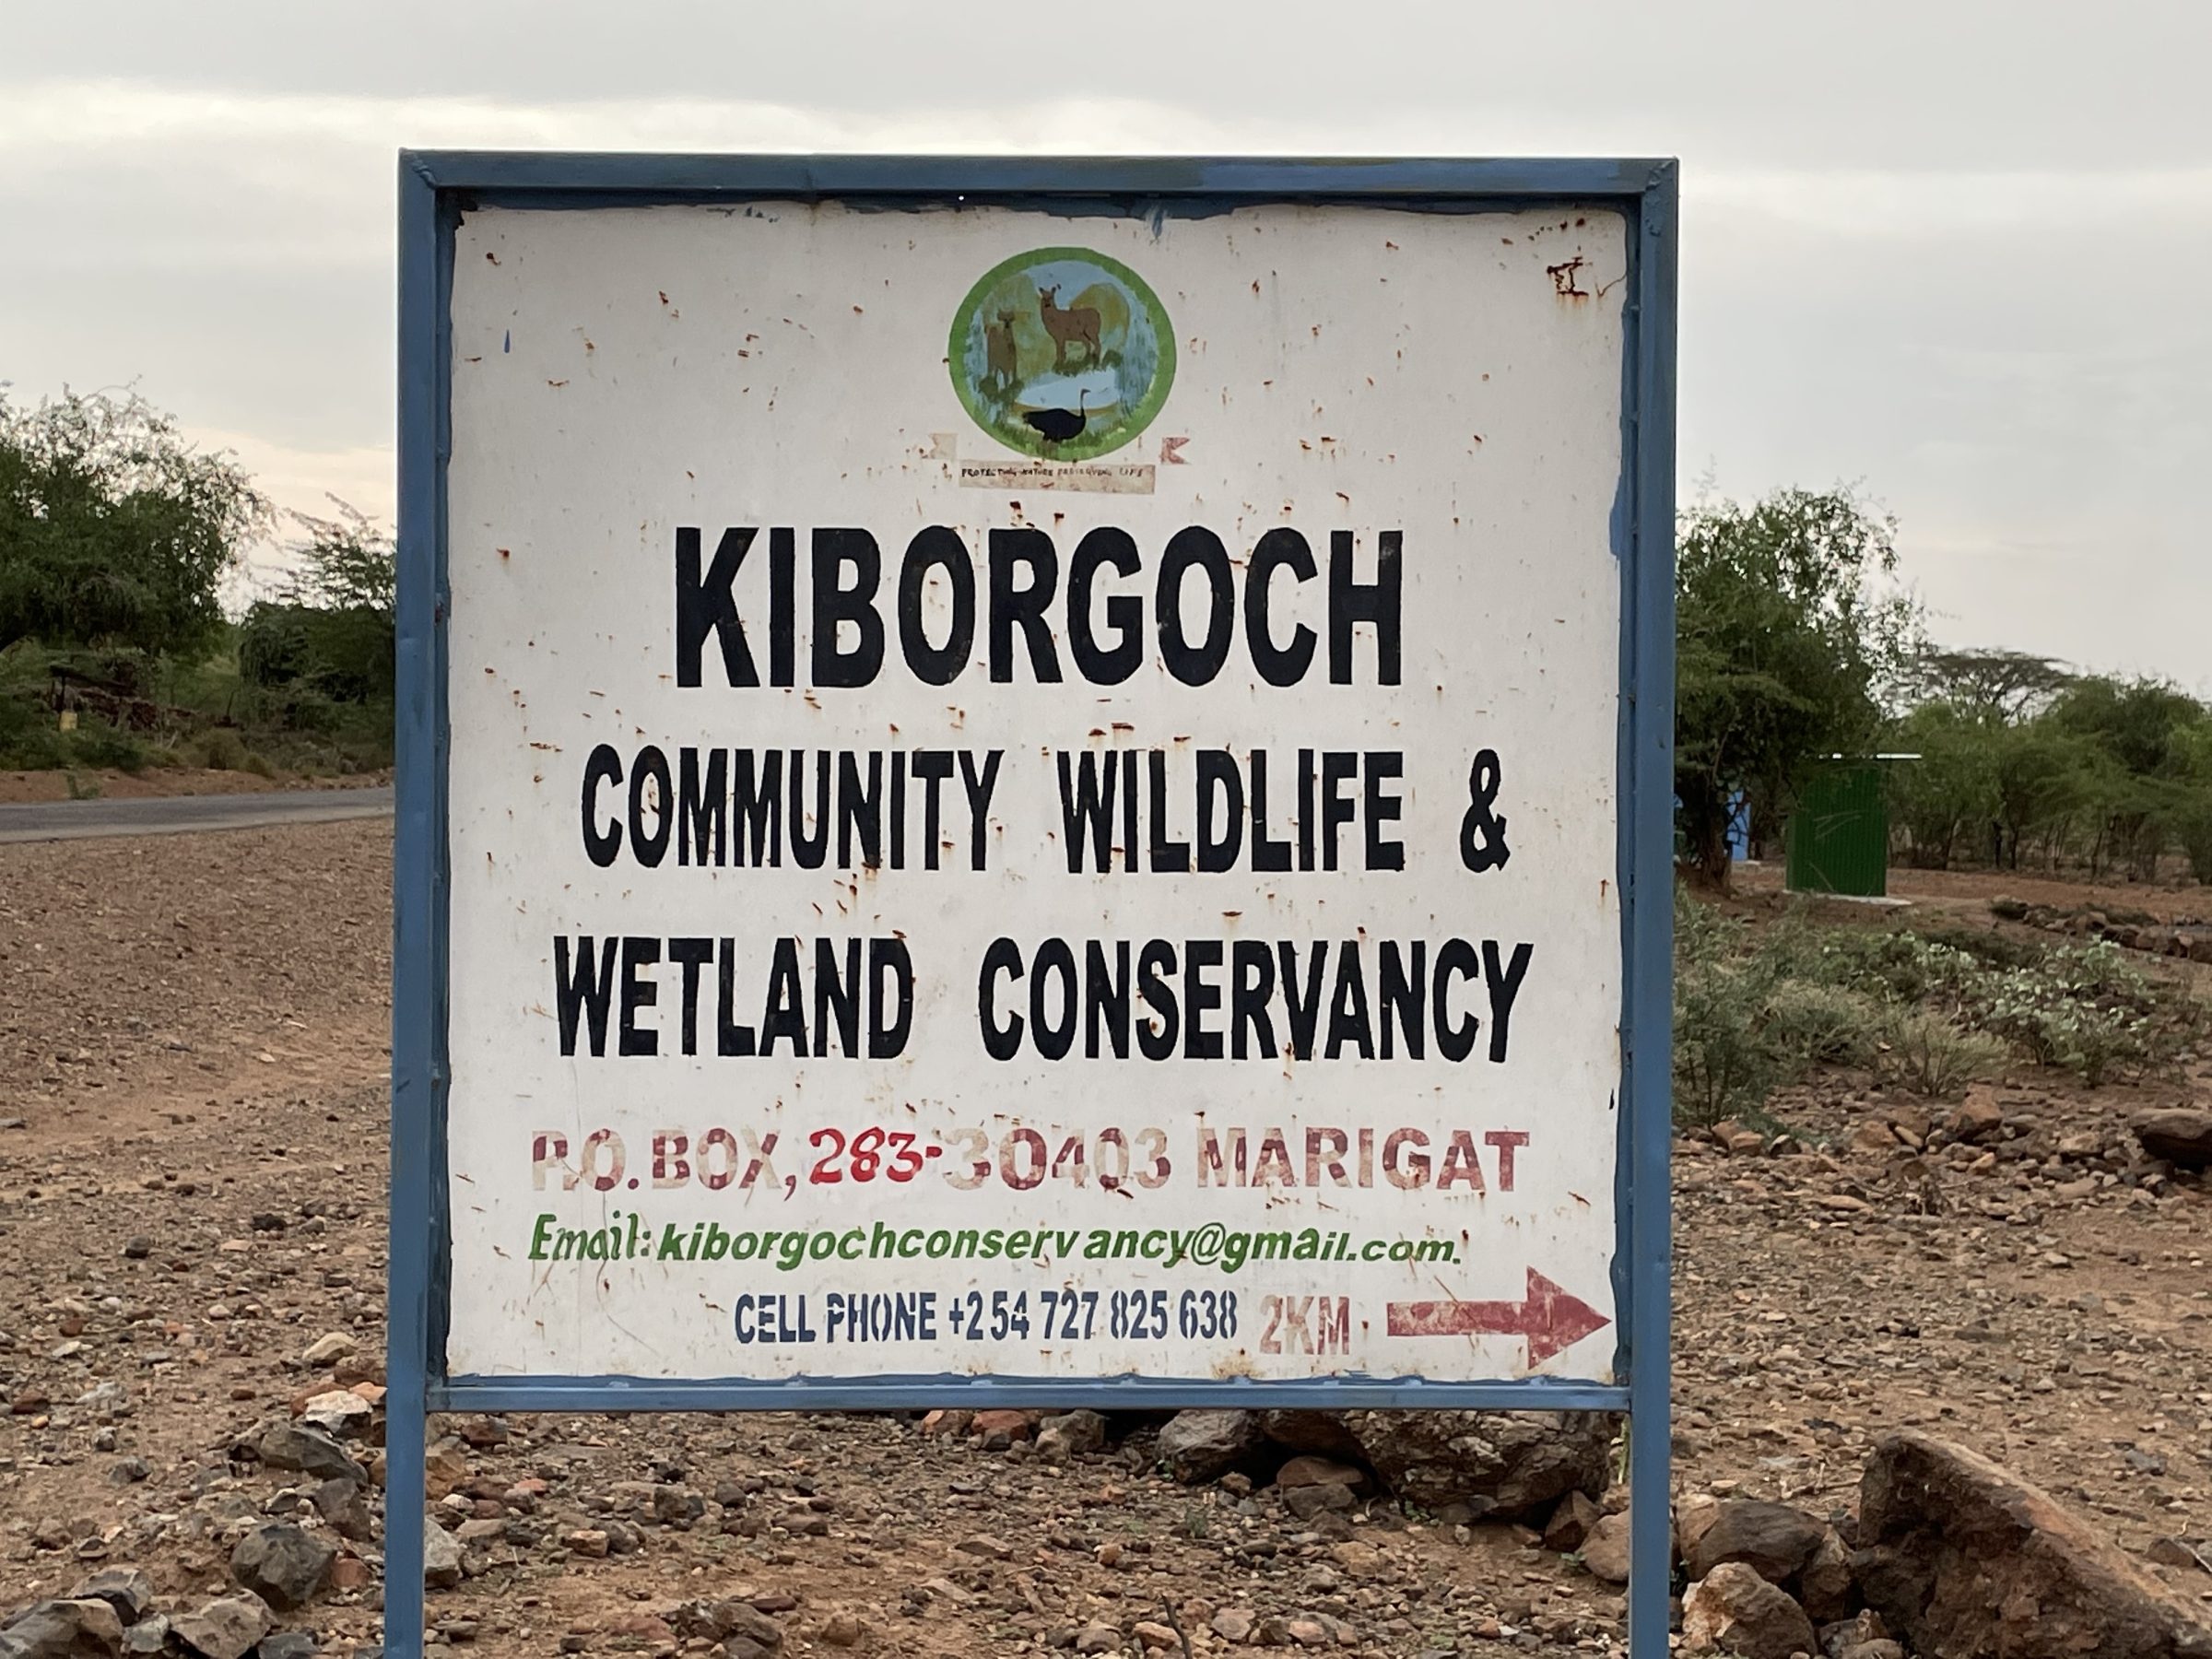 Kiborgoch ligt op zo'n 3 km voor de entree naar Lake Bogoria (linkerkant)